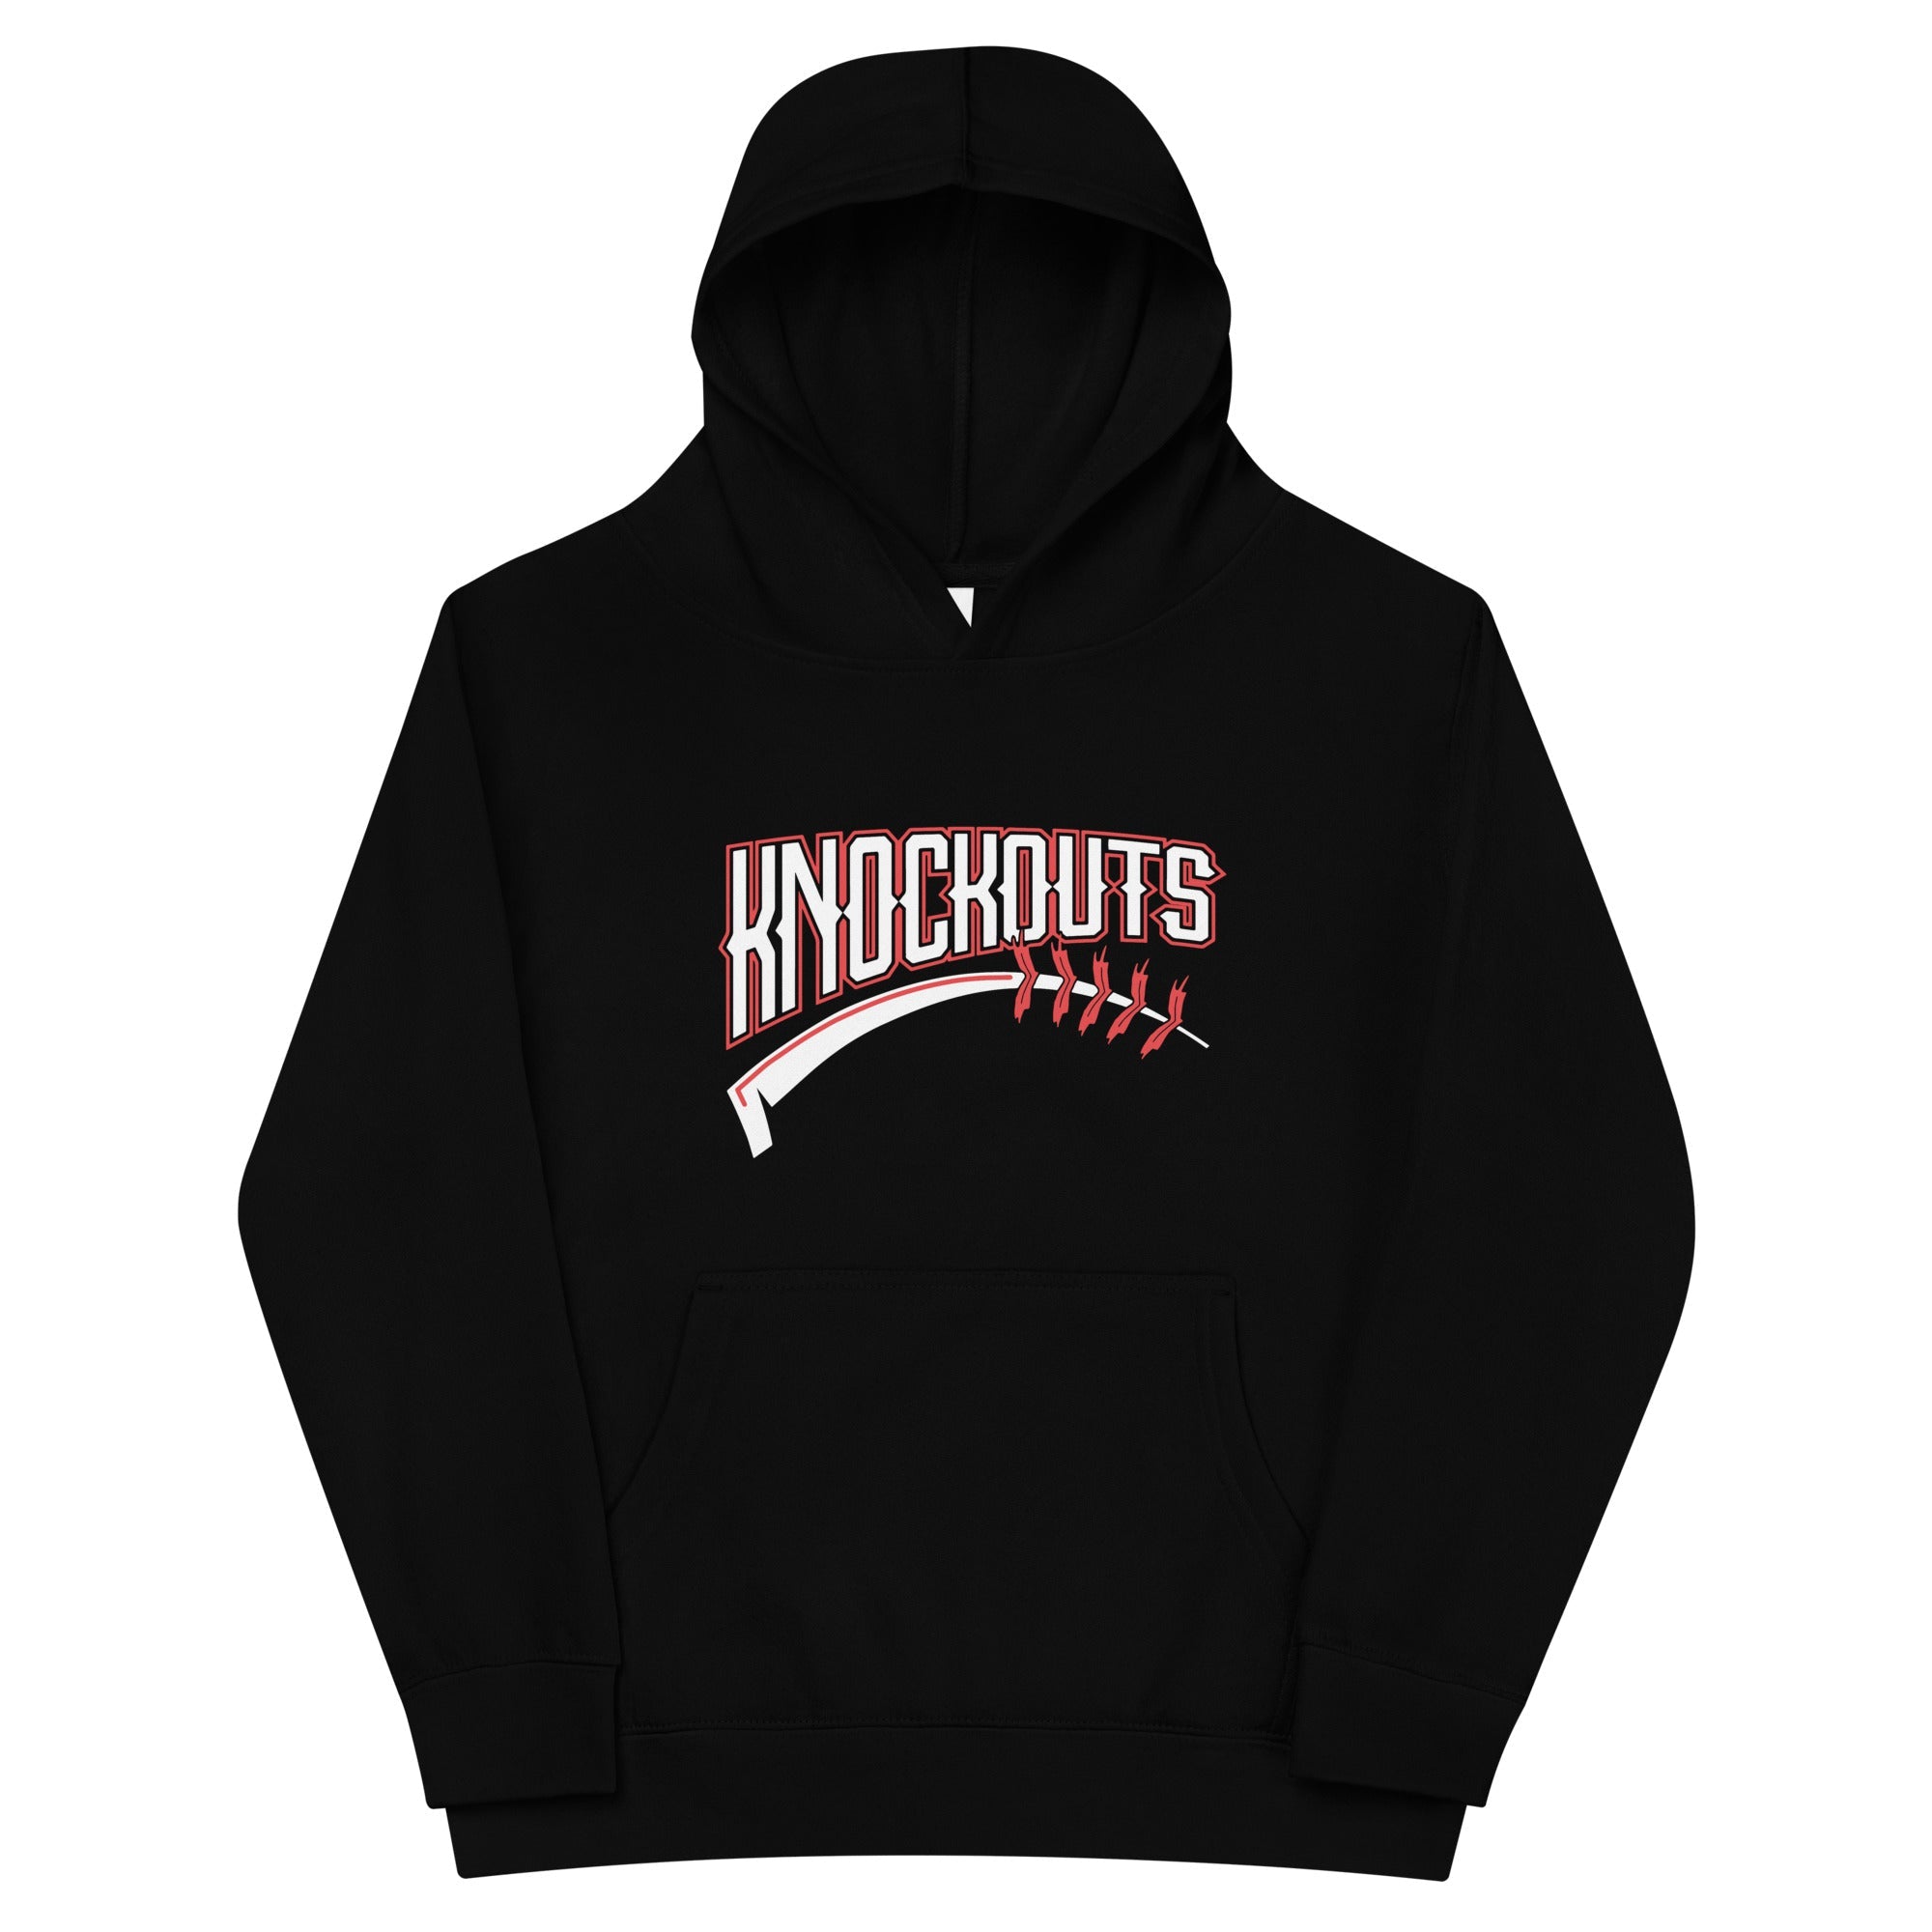 Knockouts Kids fleece hoodie